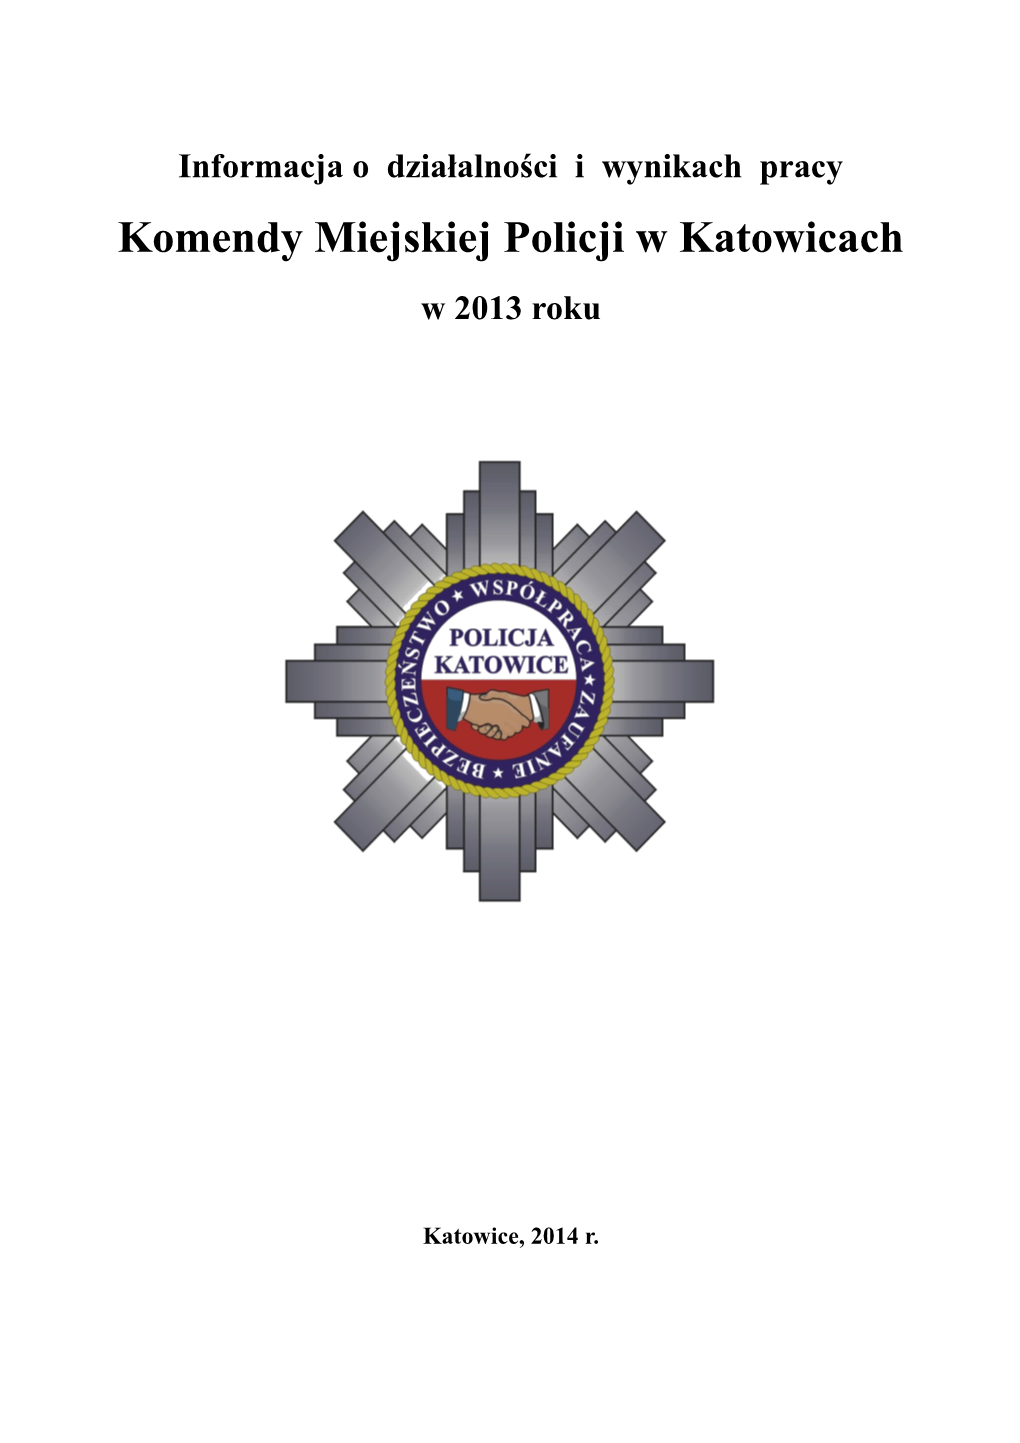 Komendy Miejskiej Policji W Katowicach W 2013 Roku